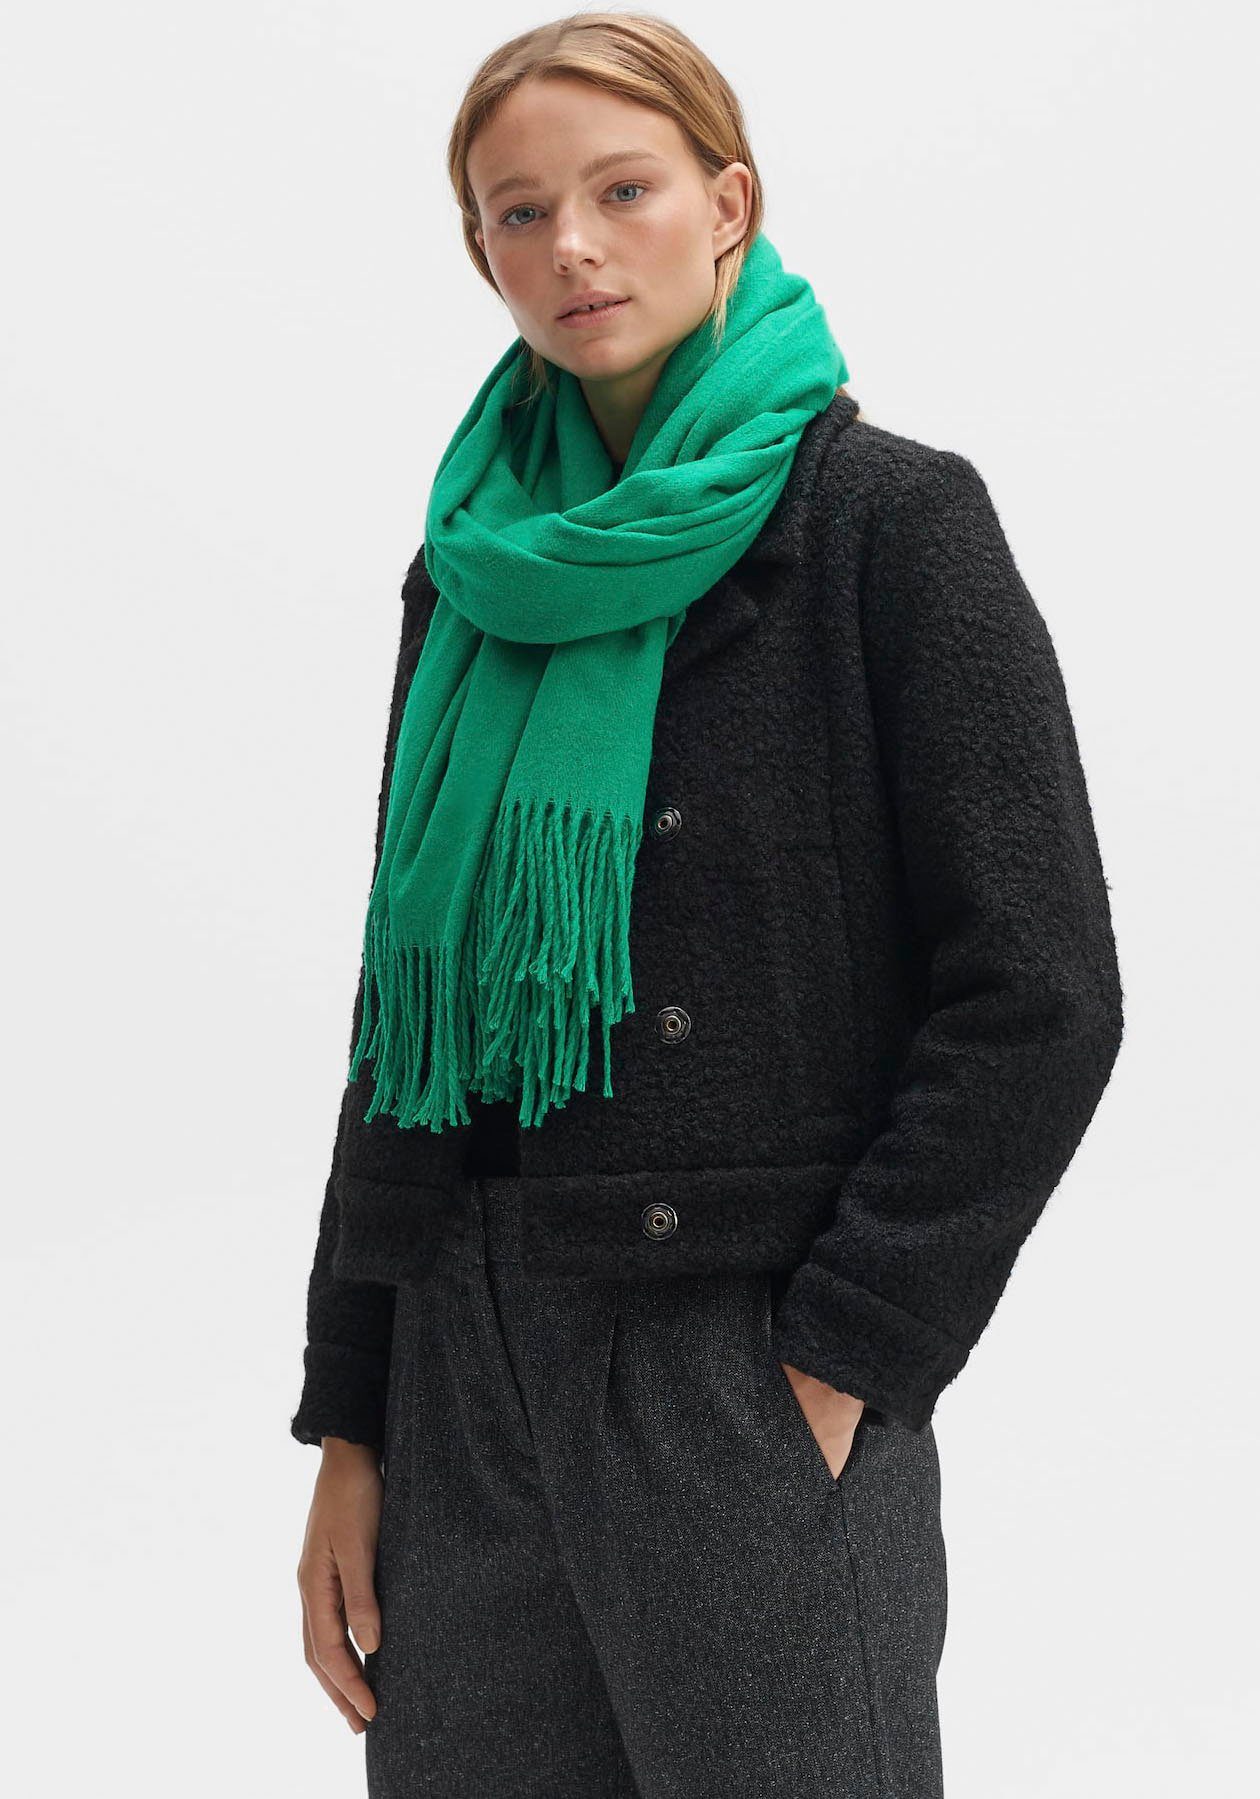 Grüne OPUS Schals für Damen online kaufen | OTTO